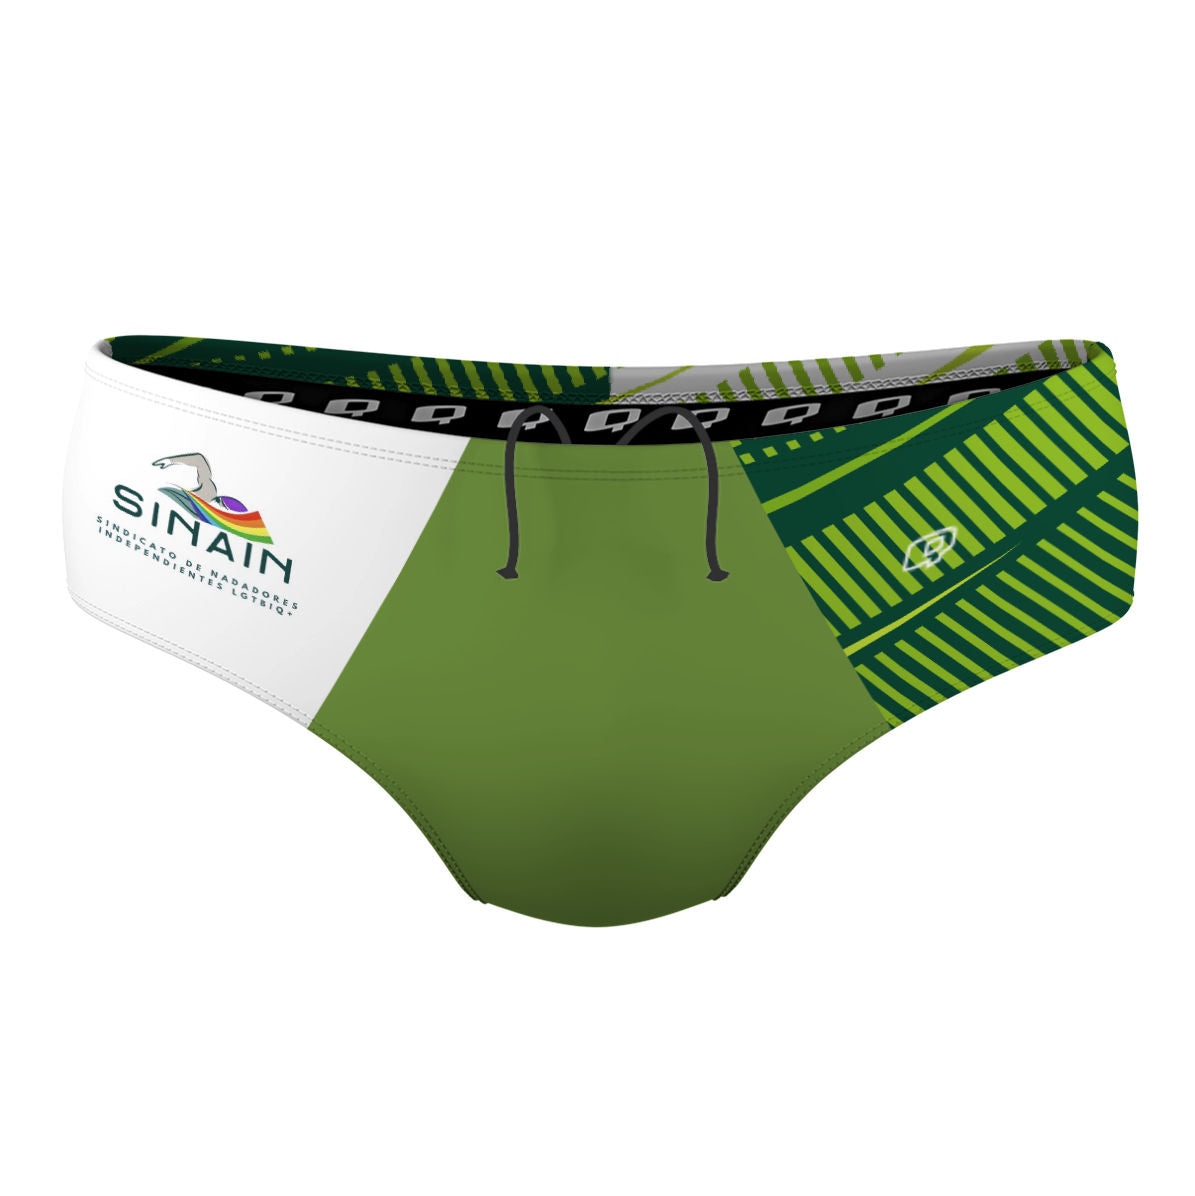 Sinain Brief Verde - Classic Brief Swimsuit